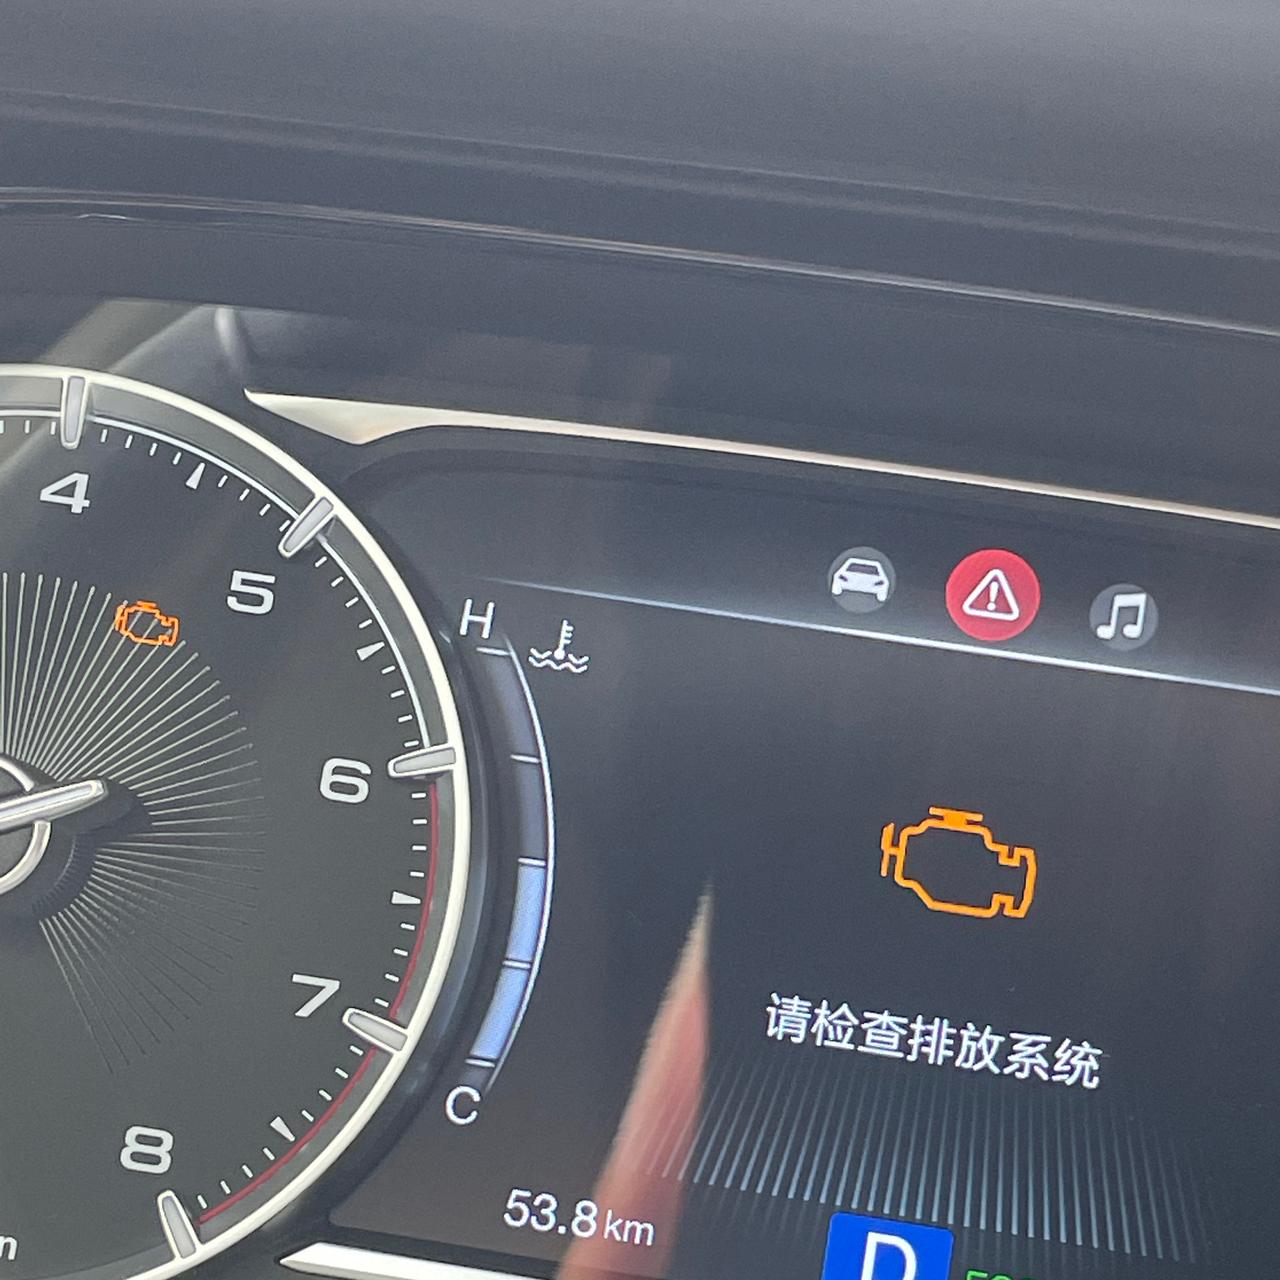 广汽传祺传祺GA6 出现排放系统报警，但是车辆行驶正常是什么问题导致的？    车辆冷车启动经常会突突突三四次后才点着火